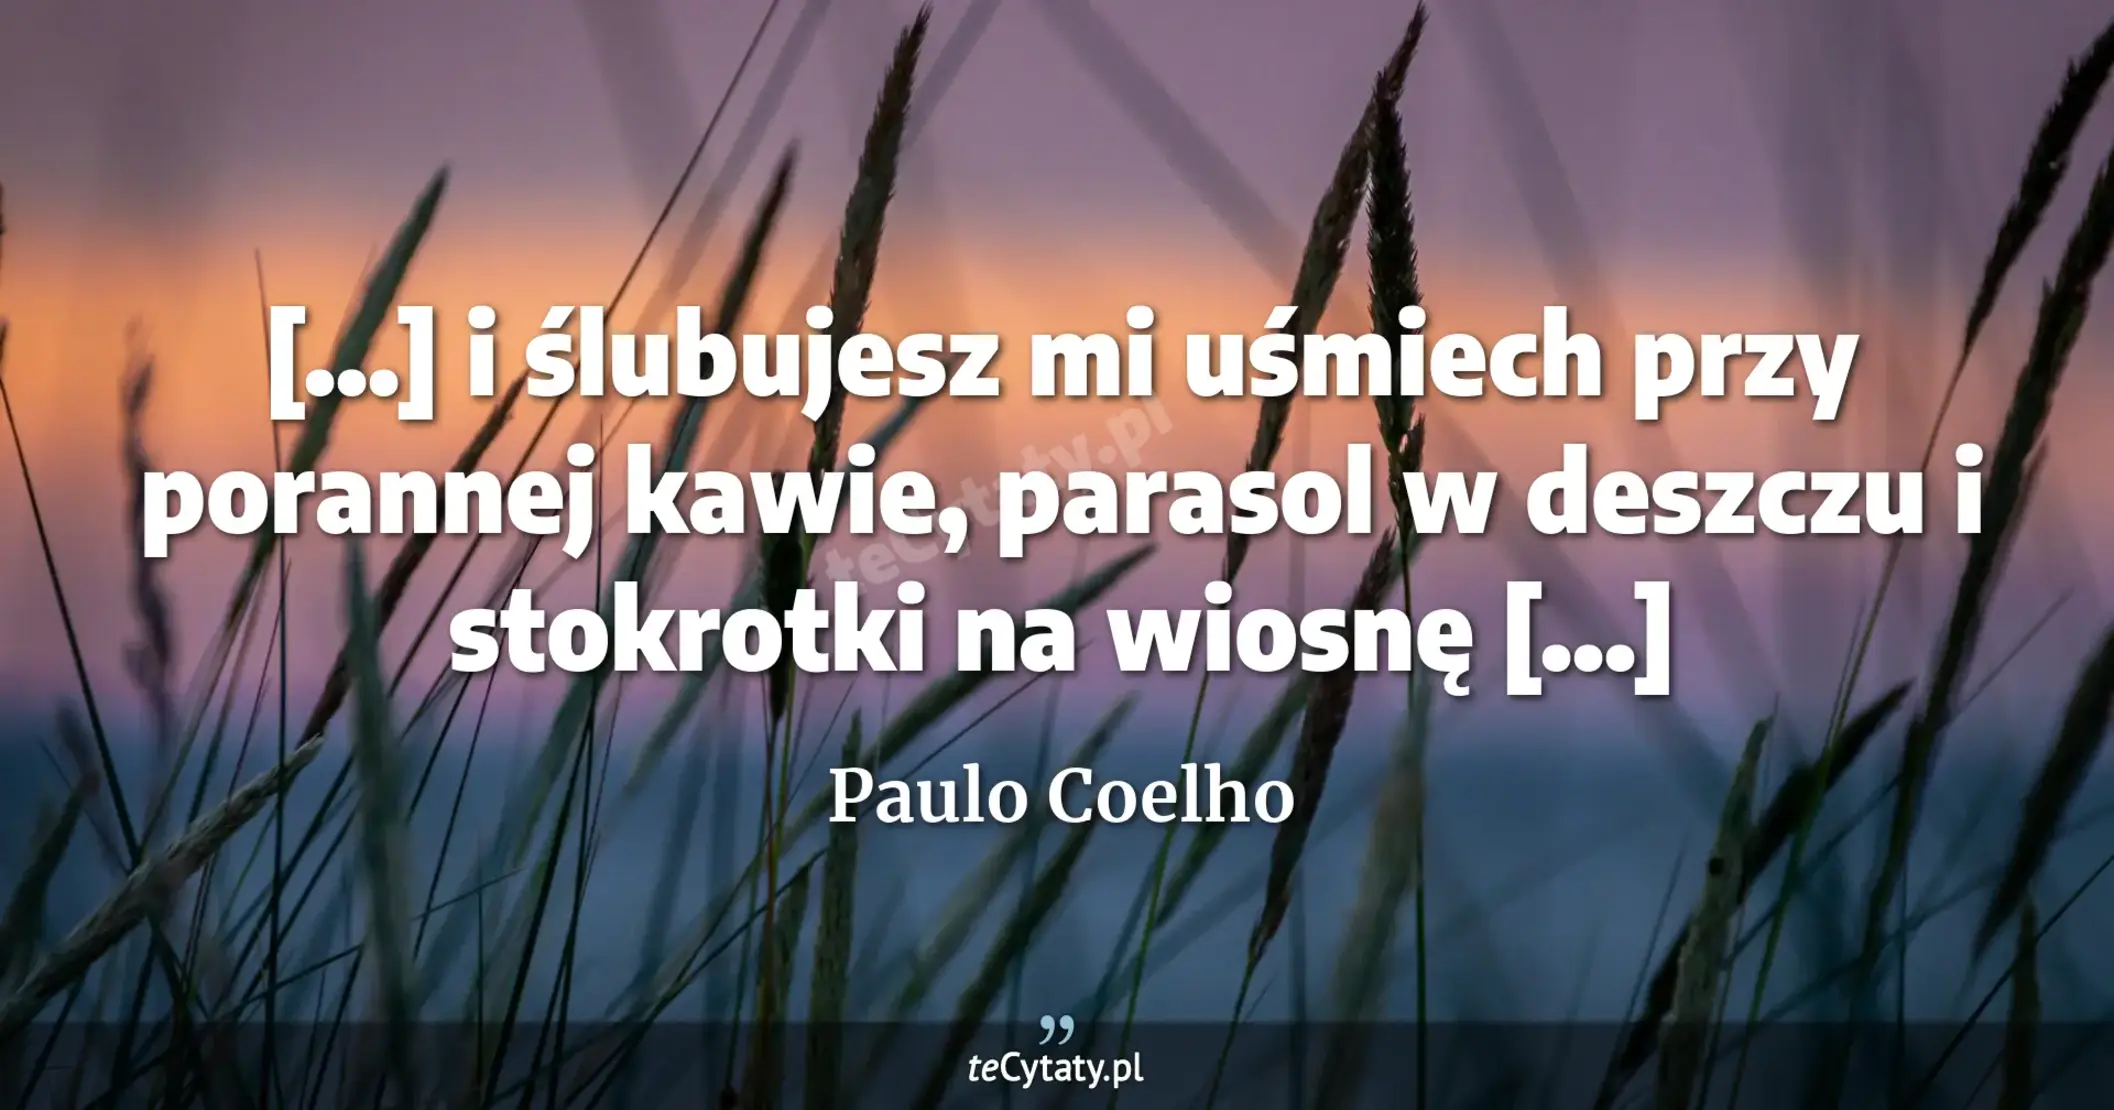 [...] i ślubujesz mi uśmiech przy porannej kawie, parasol w deszczu i stokrotki na wiosnę [...] - Paulo Coelho